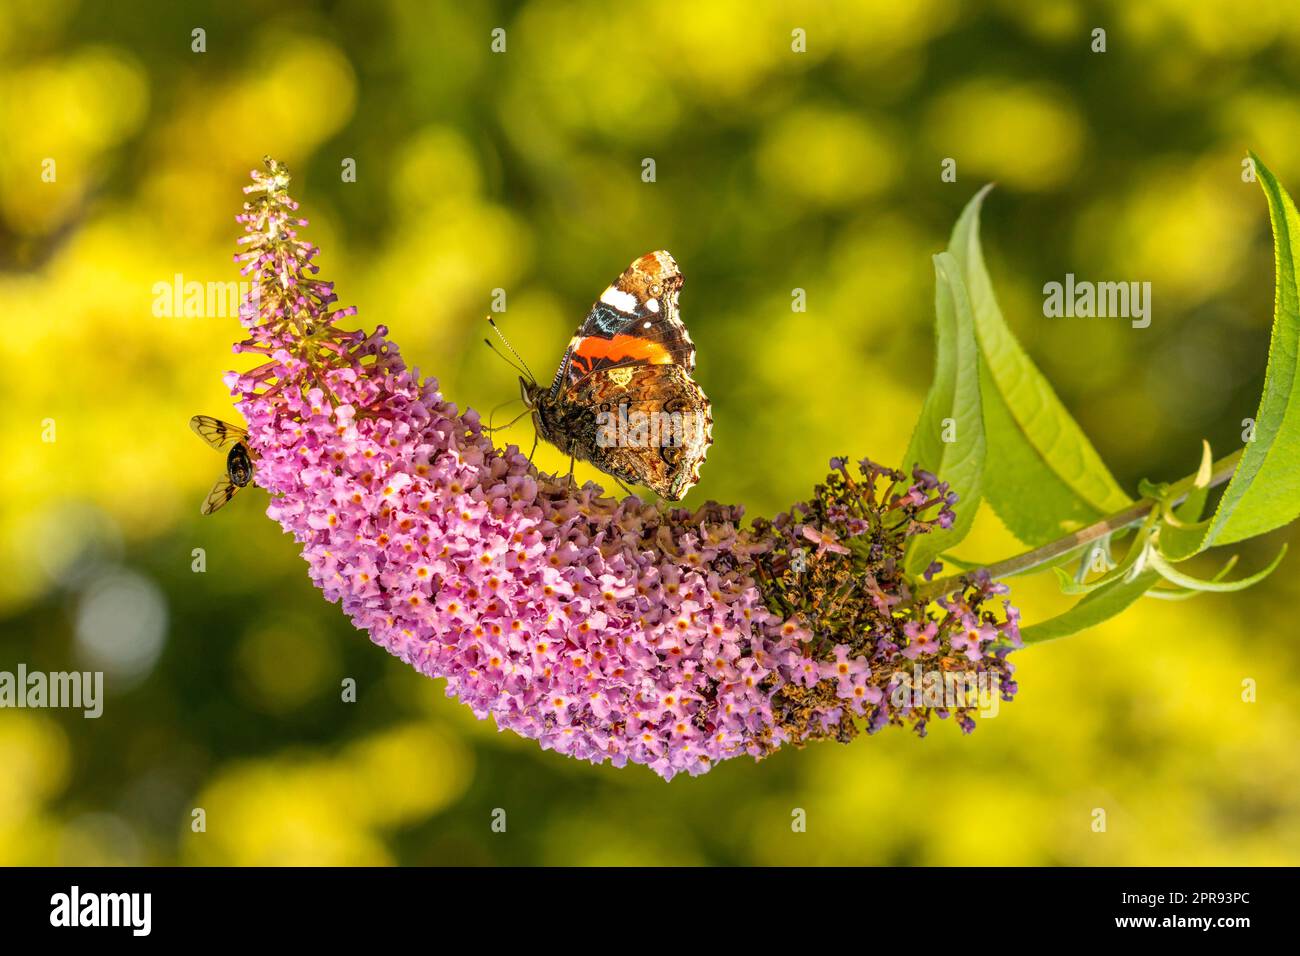 Butterfly seeking nectar on  purple flowers Stock Photo